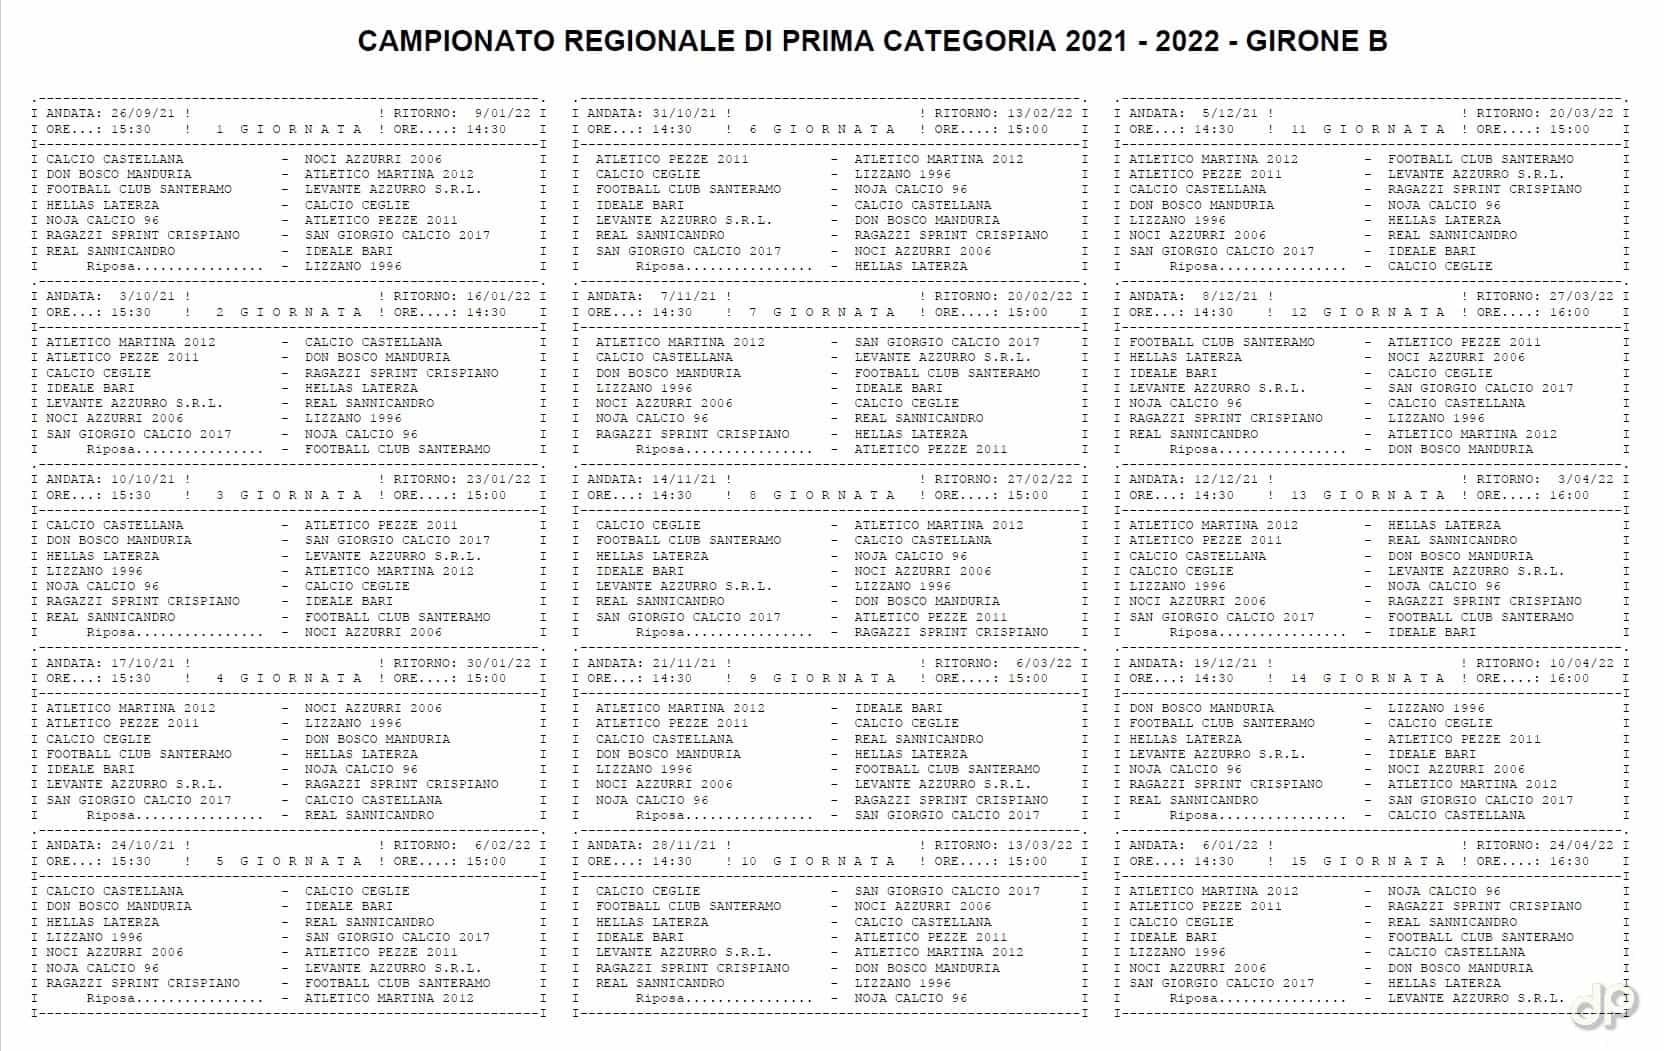 Calendario Prima Categoria pugliese girone B 2021-22